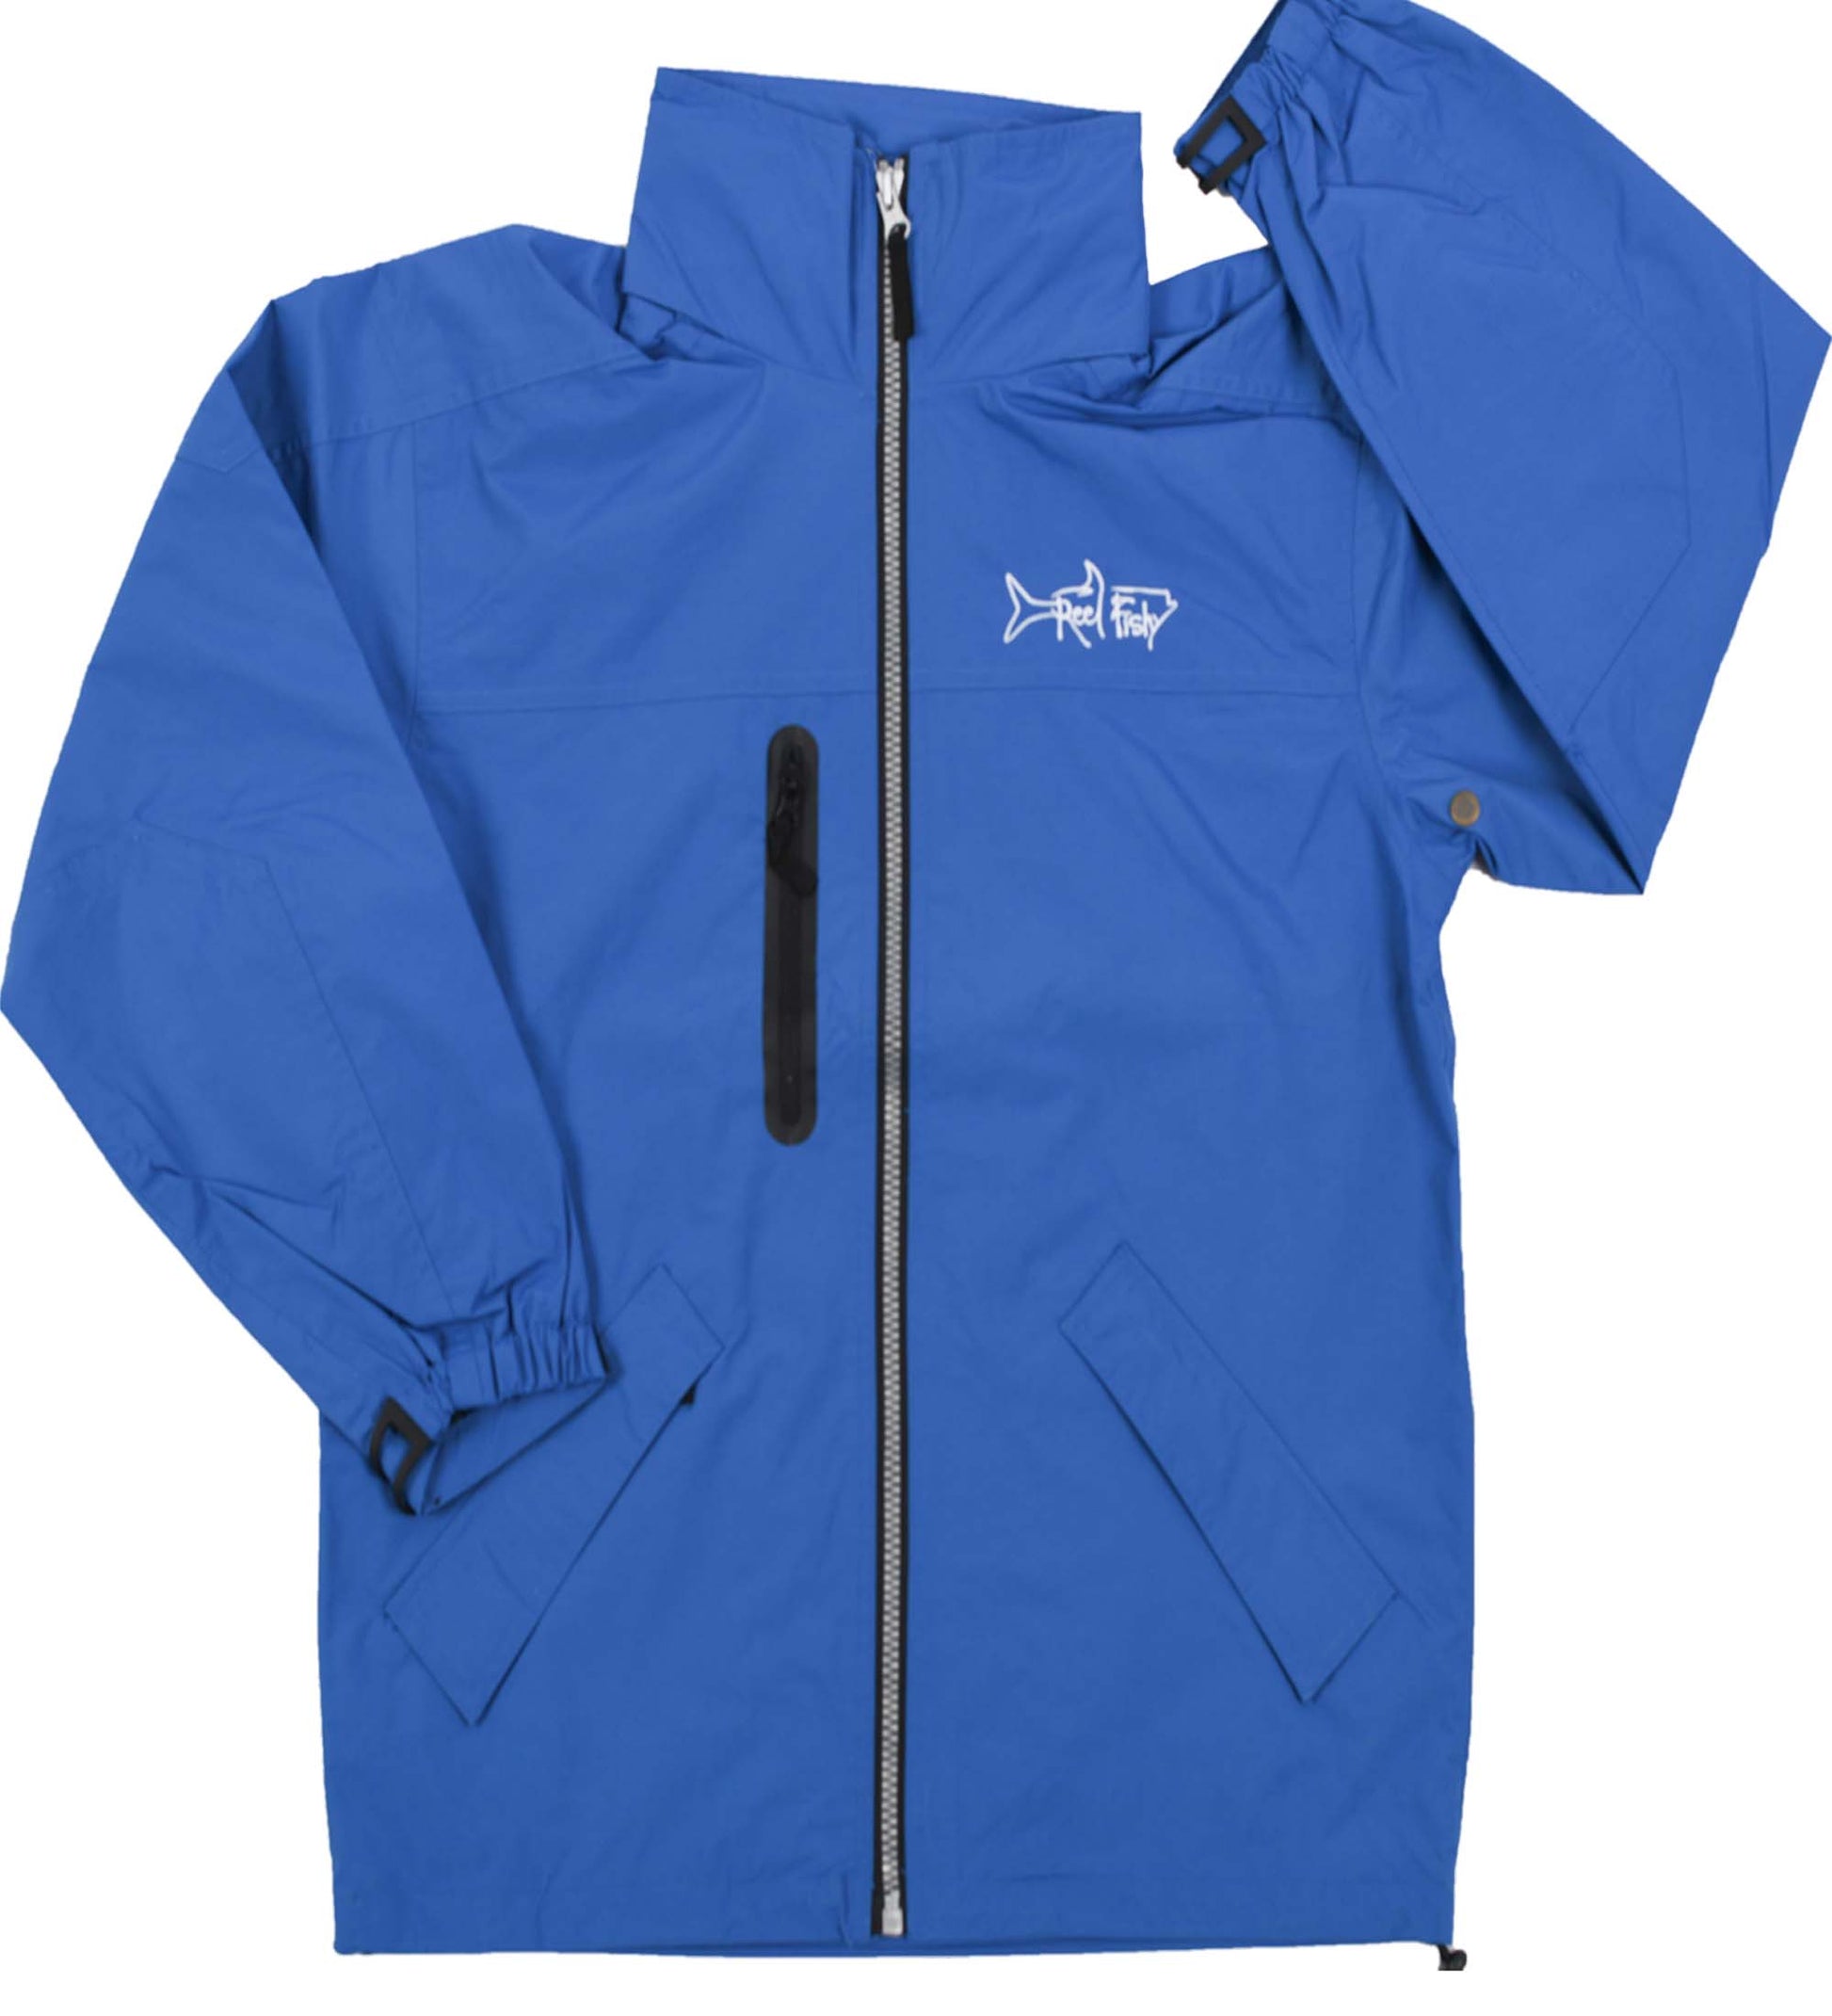 Rain Jacket, Hooded Full Zip Water Resistant Breathable Rain Coat S / Blue